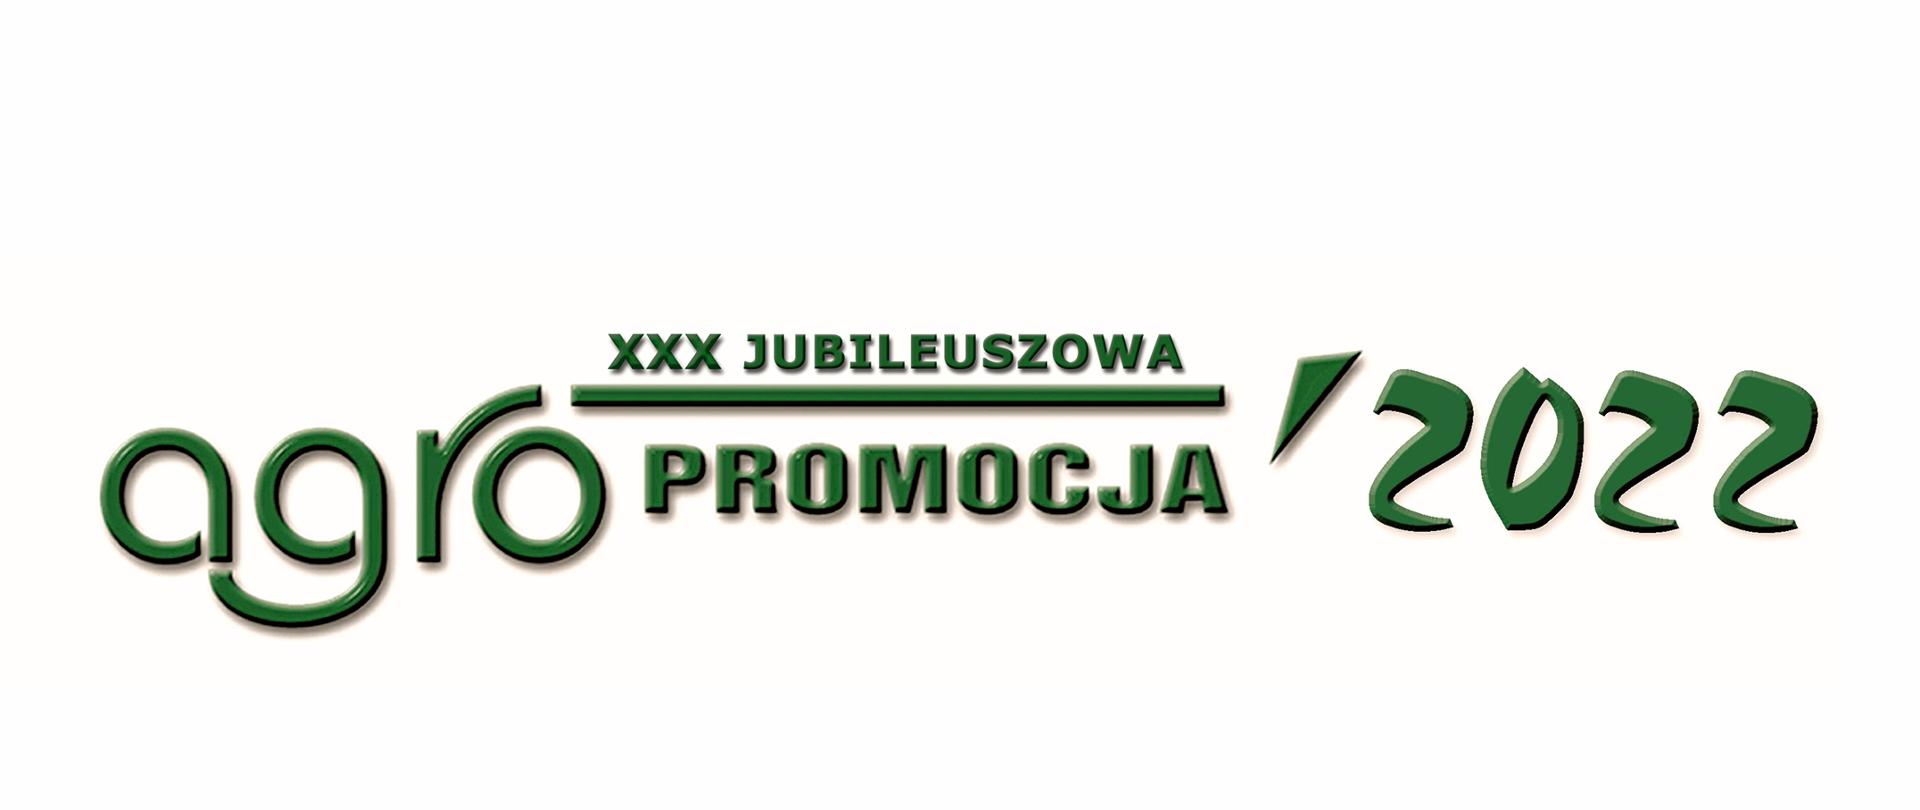 zdjęcie przedstawia logo z zielonym napisem XXX Jubileuszowa AGROPROMOCJA 2022 na białym tle